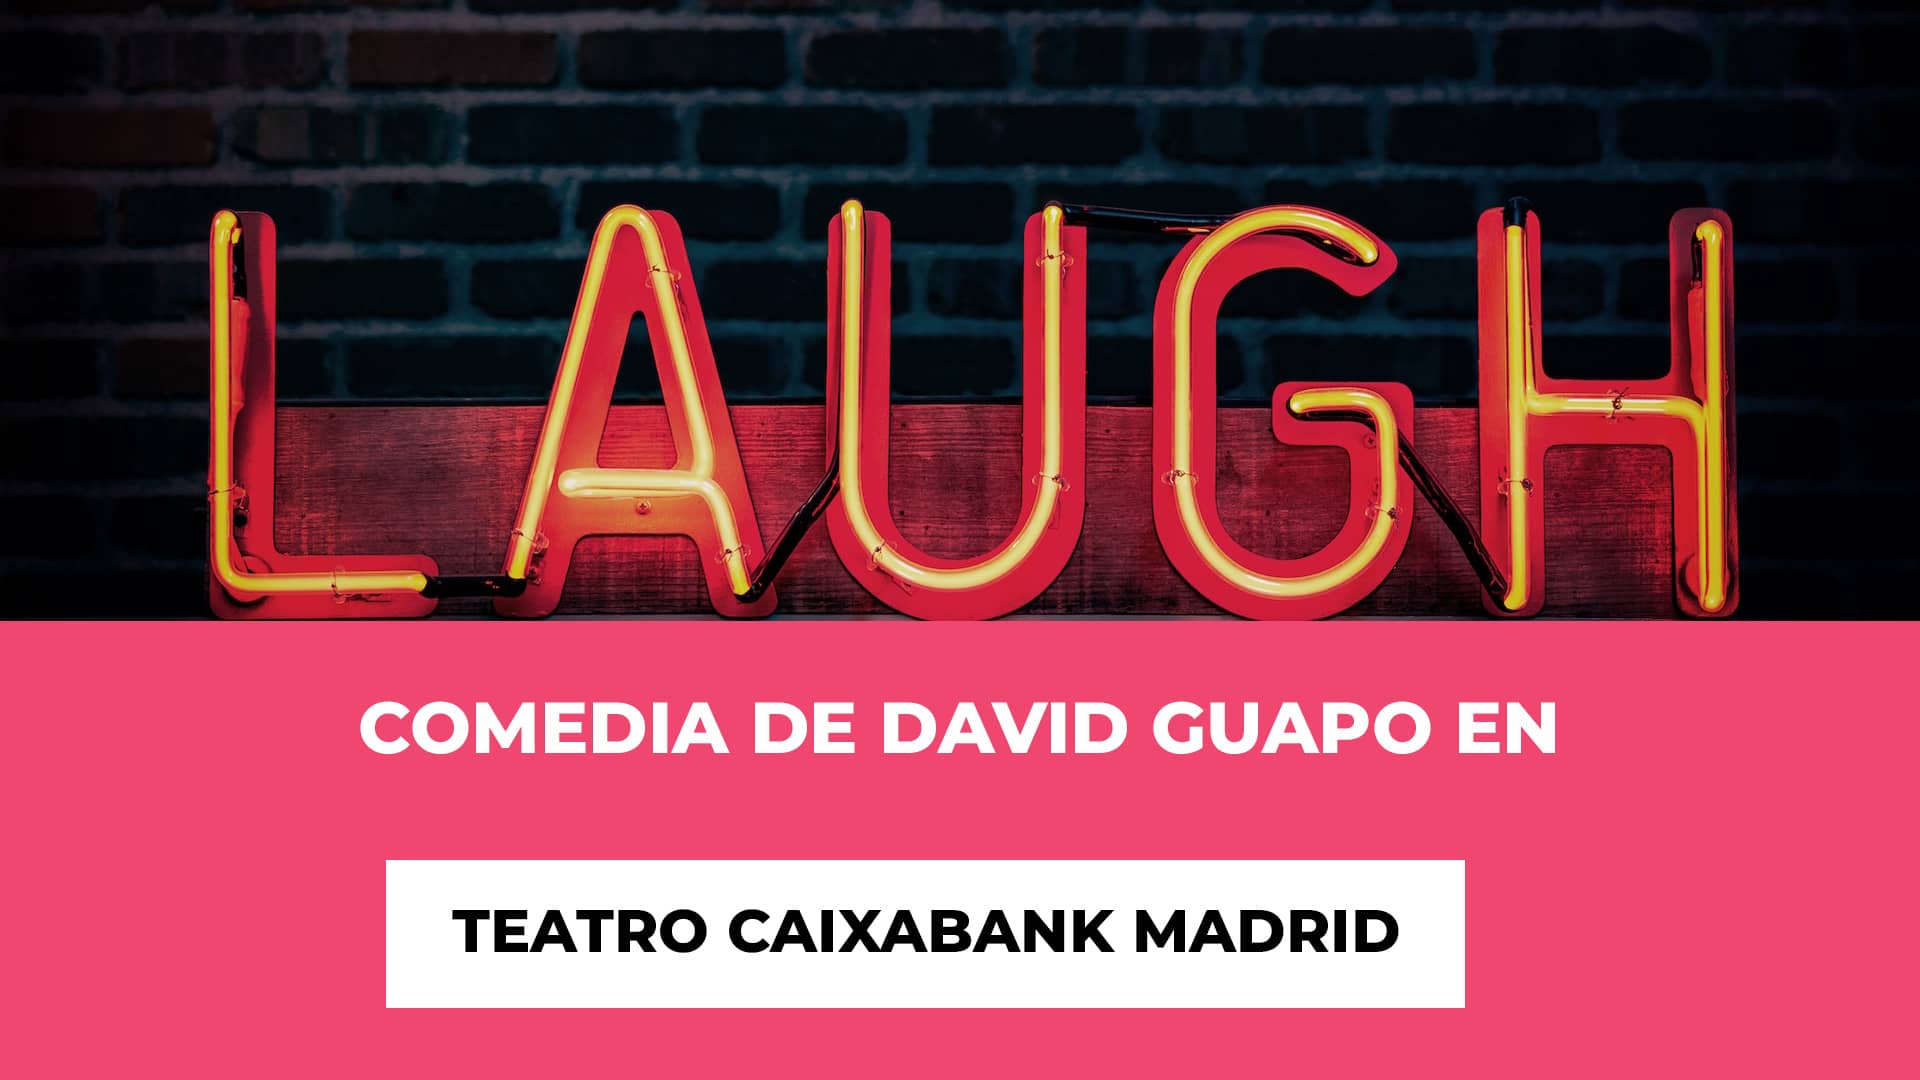 Comedia de David Guapo en Teatro CaixaBank Madrid - Horario - Fechas - Ubicación - Ríe con David Guapo - #Quenonosfrunjanlafiesta